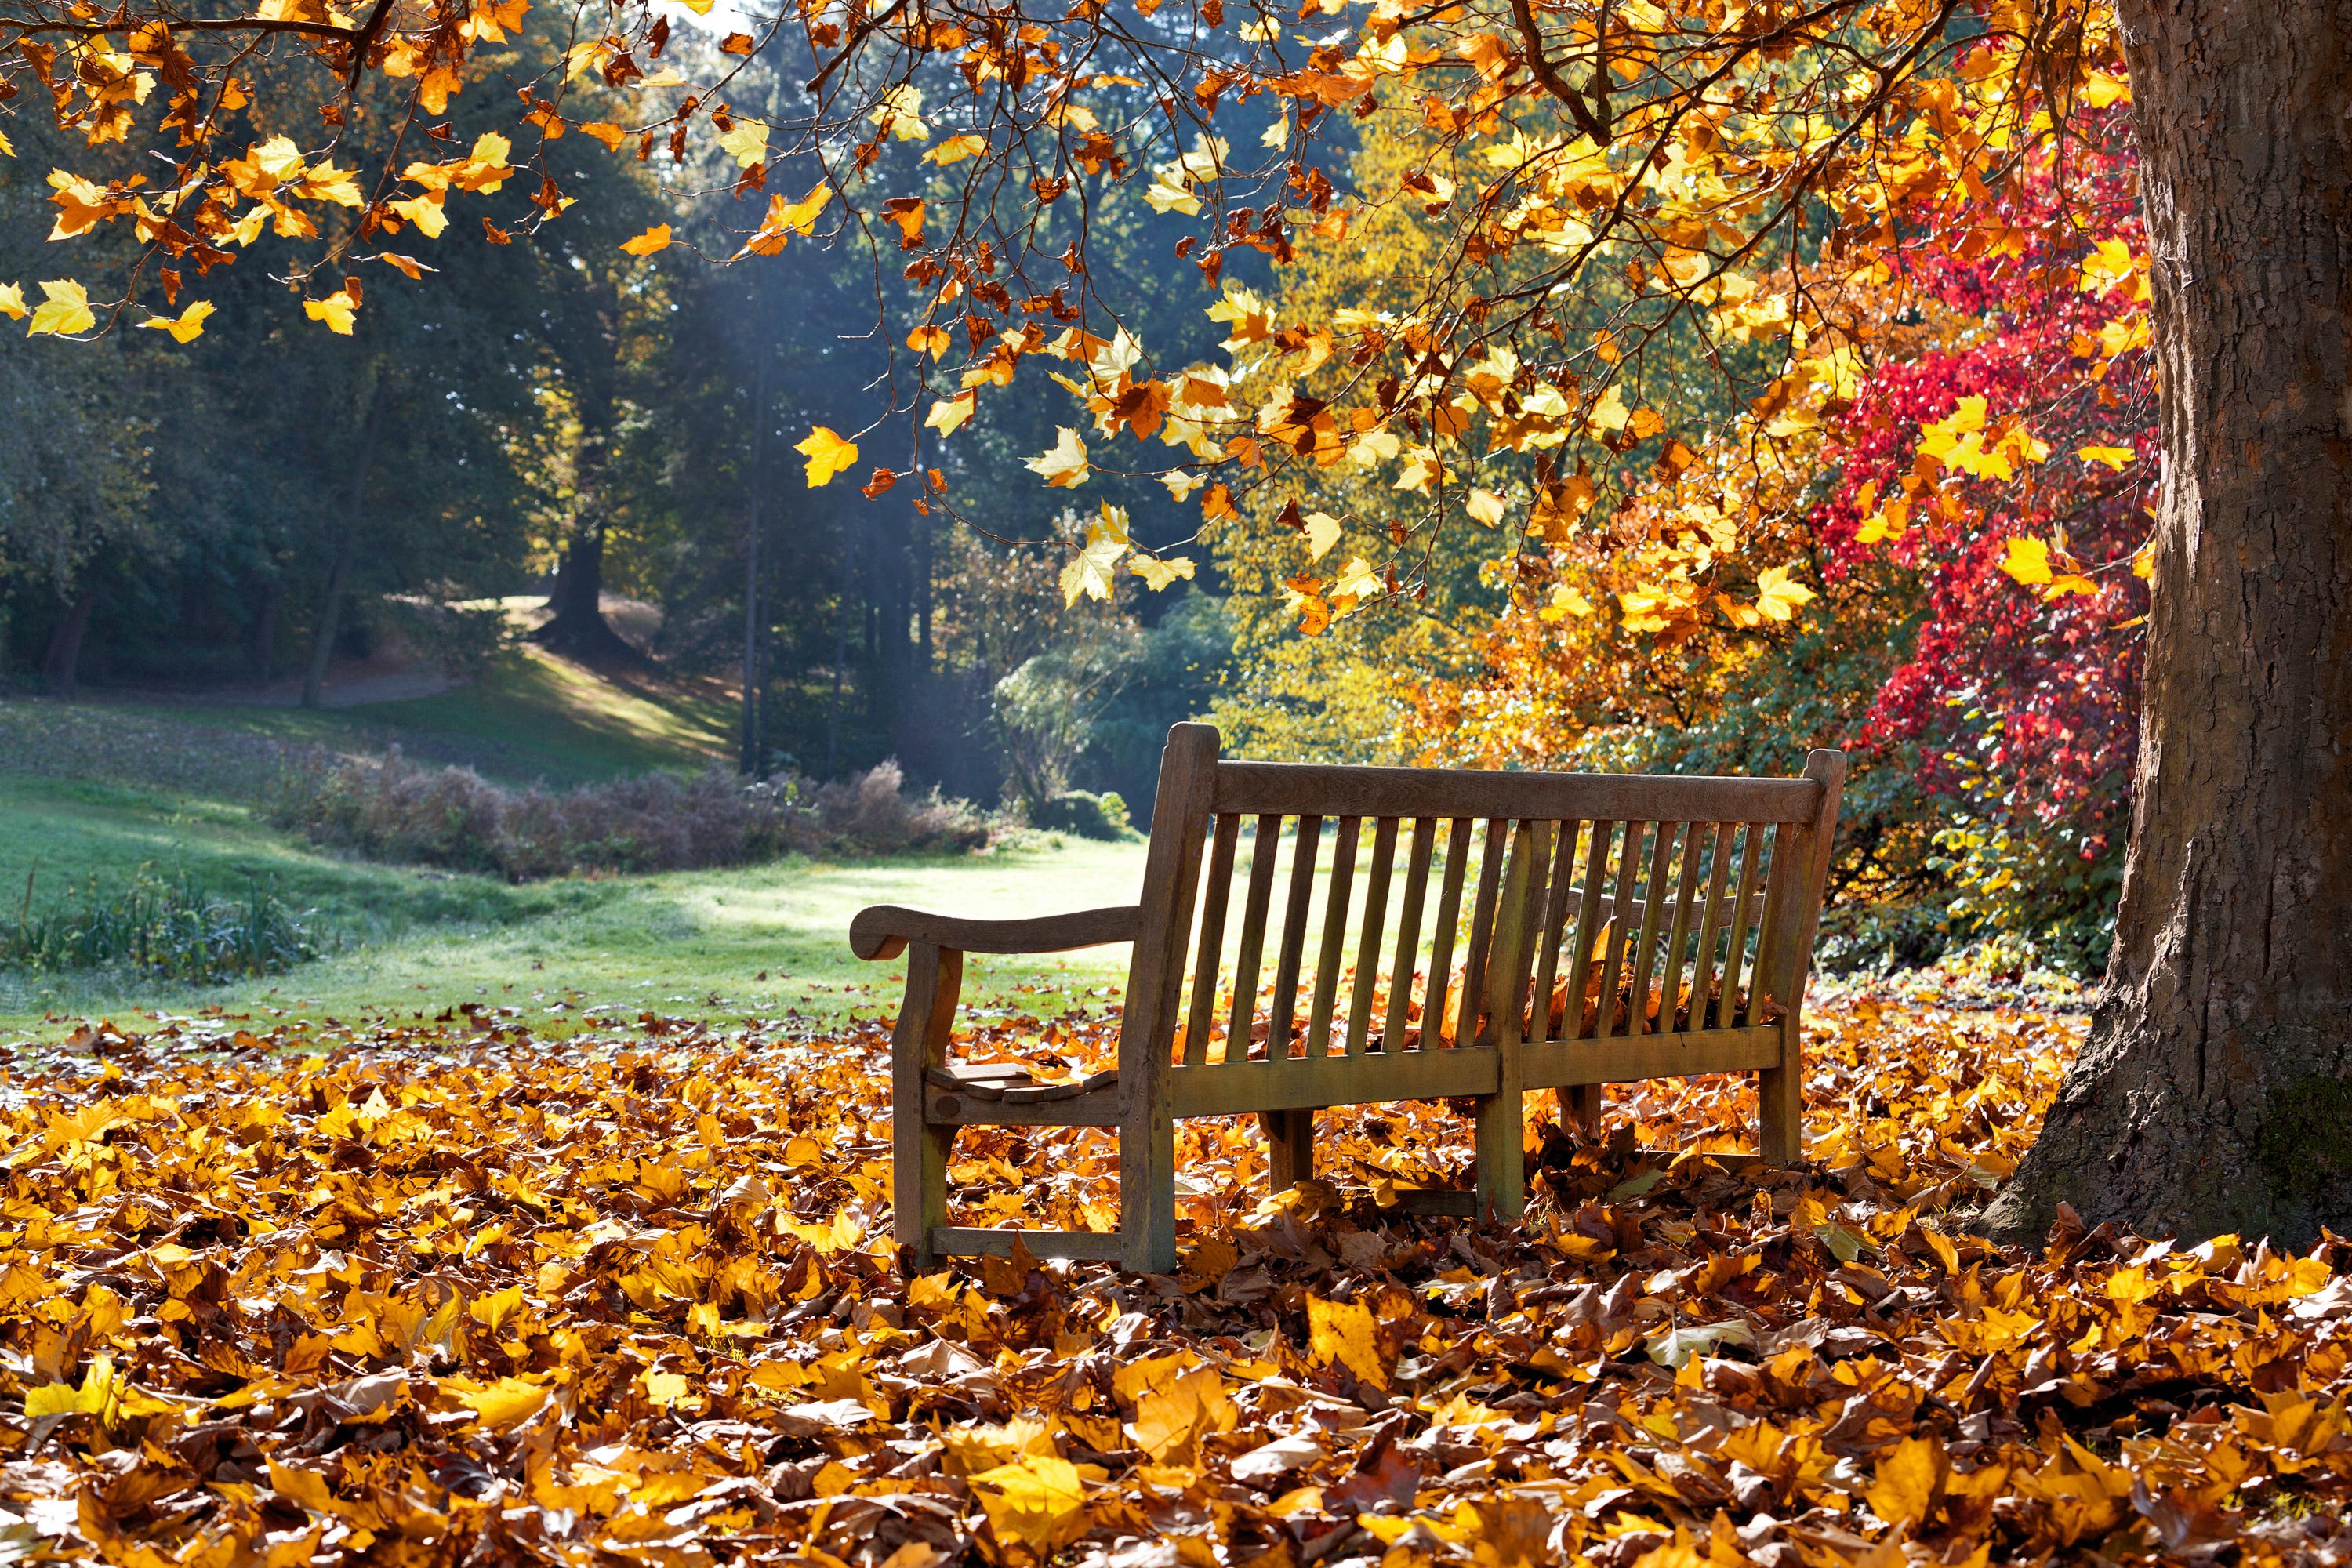 Скачать обои бесплатно Осень, Дерево, Листва, Скамья, Сделано Человеком картинка на рабочий стол ПК